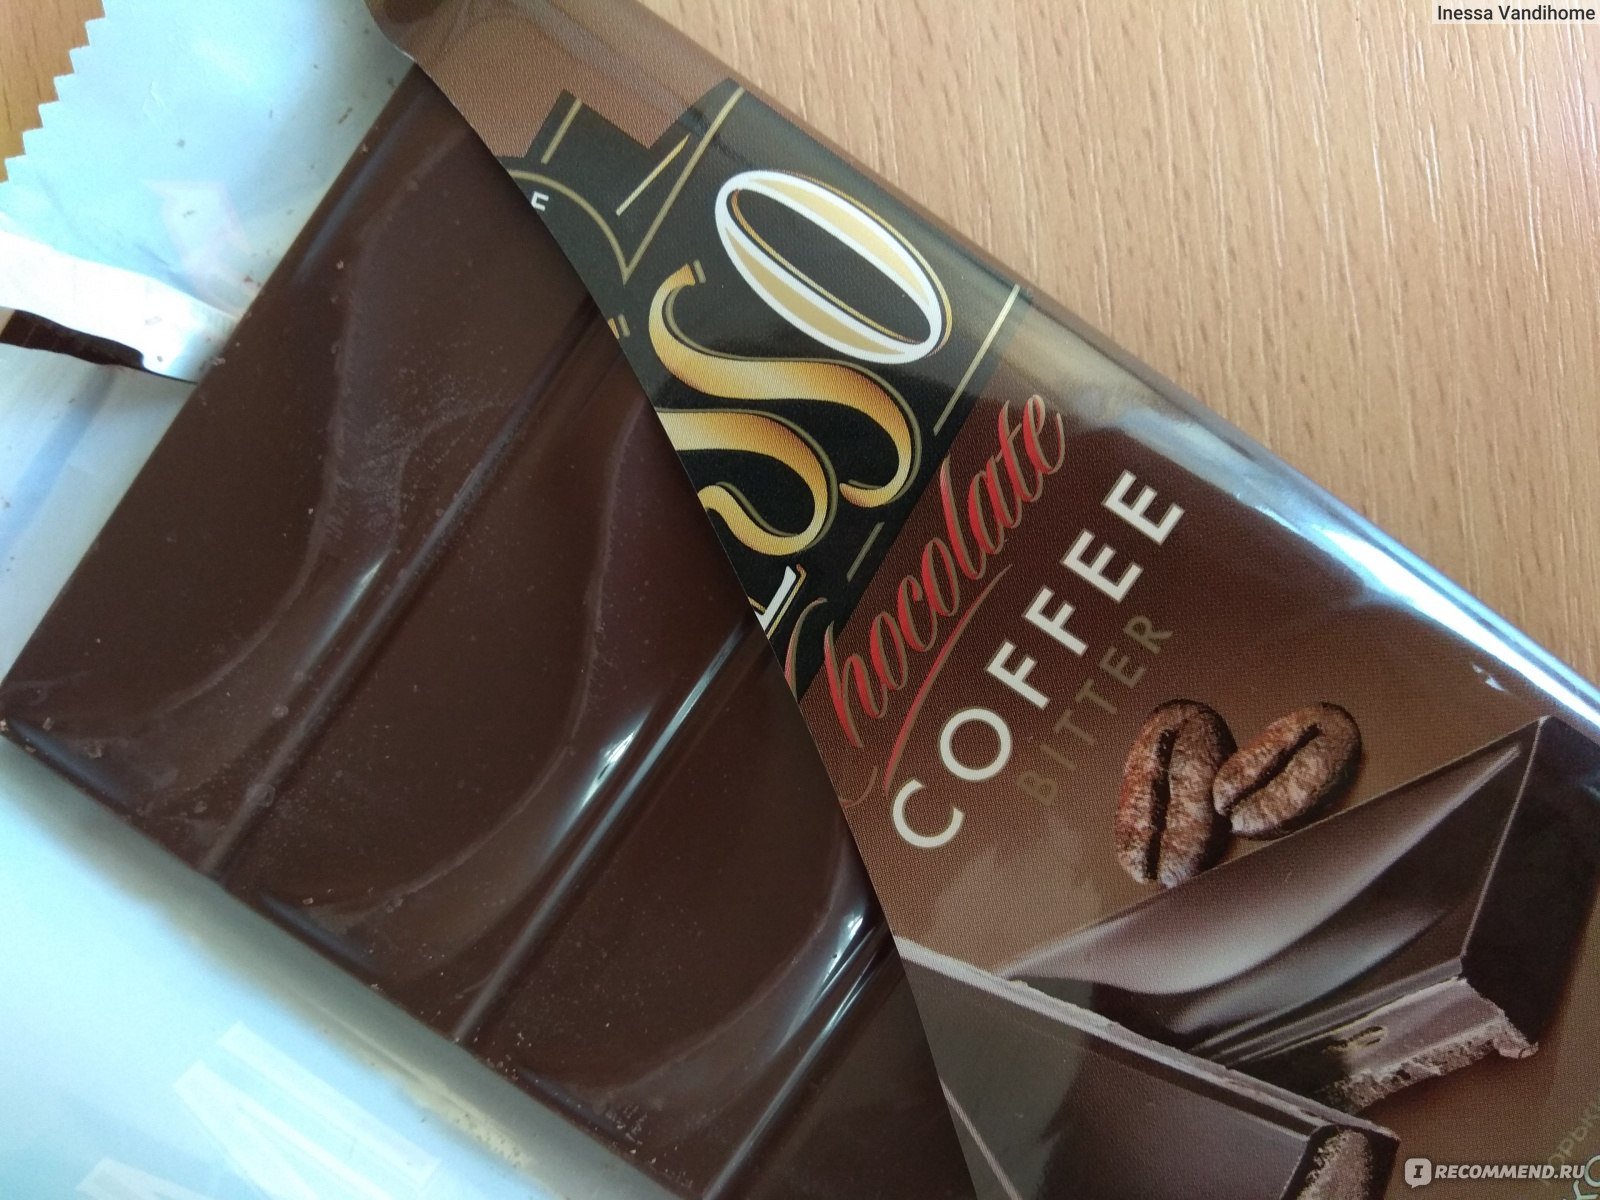 Шоколад озеры. Шоколад фирмы. Бельгийский шоколад марки. Монте шоко шоколад. Шоколадка Франция.